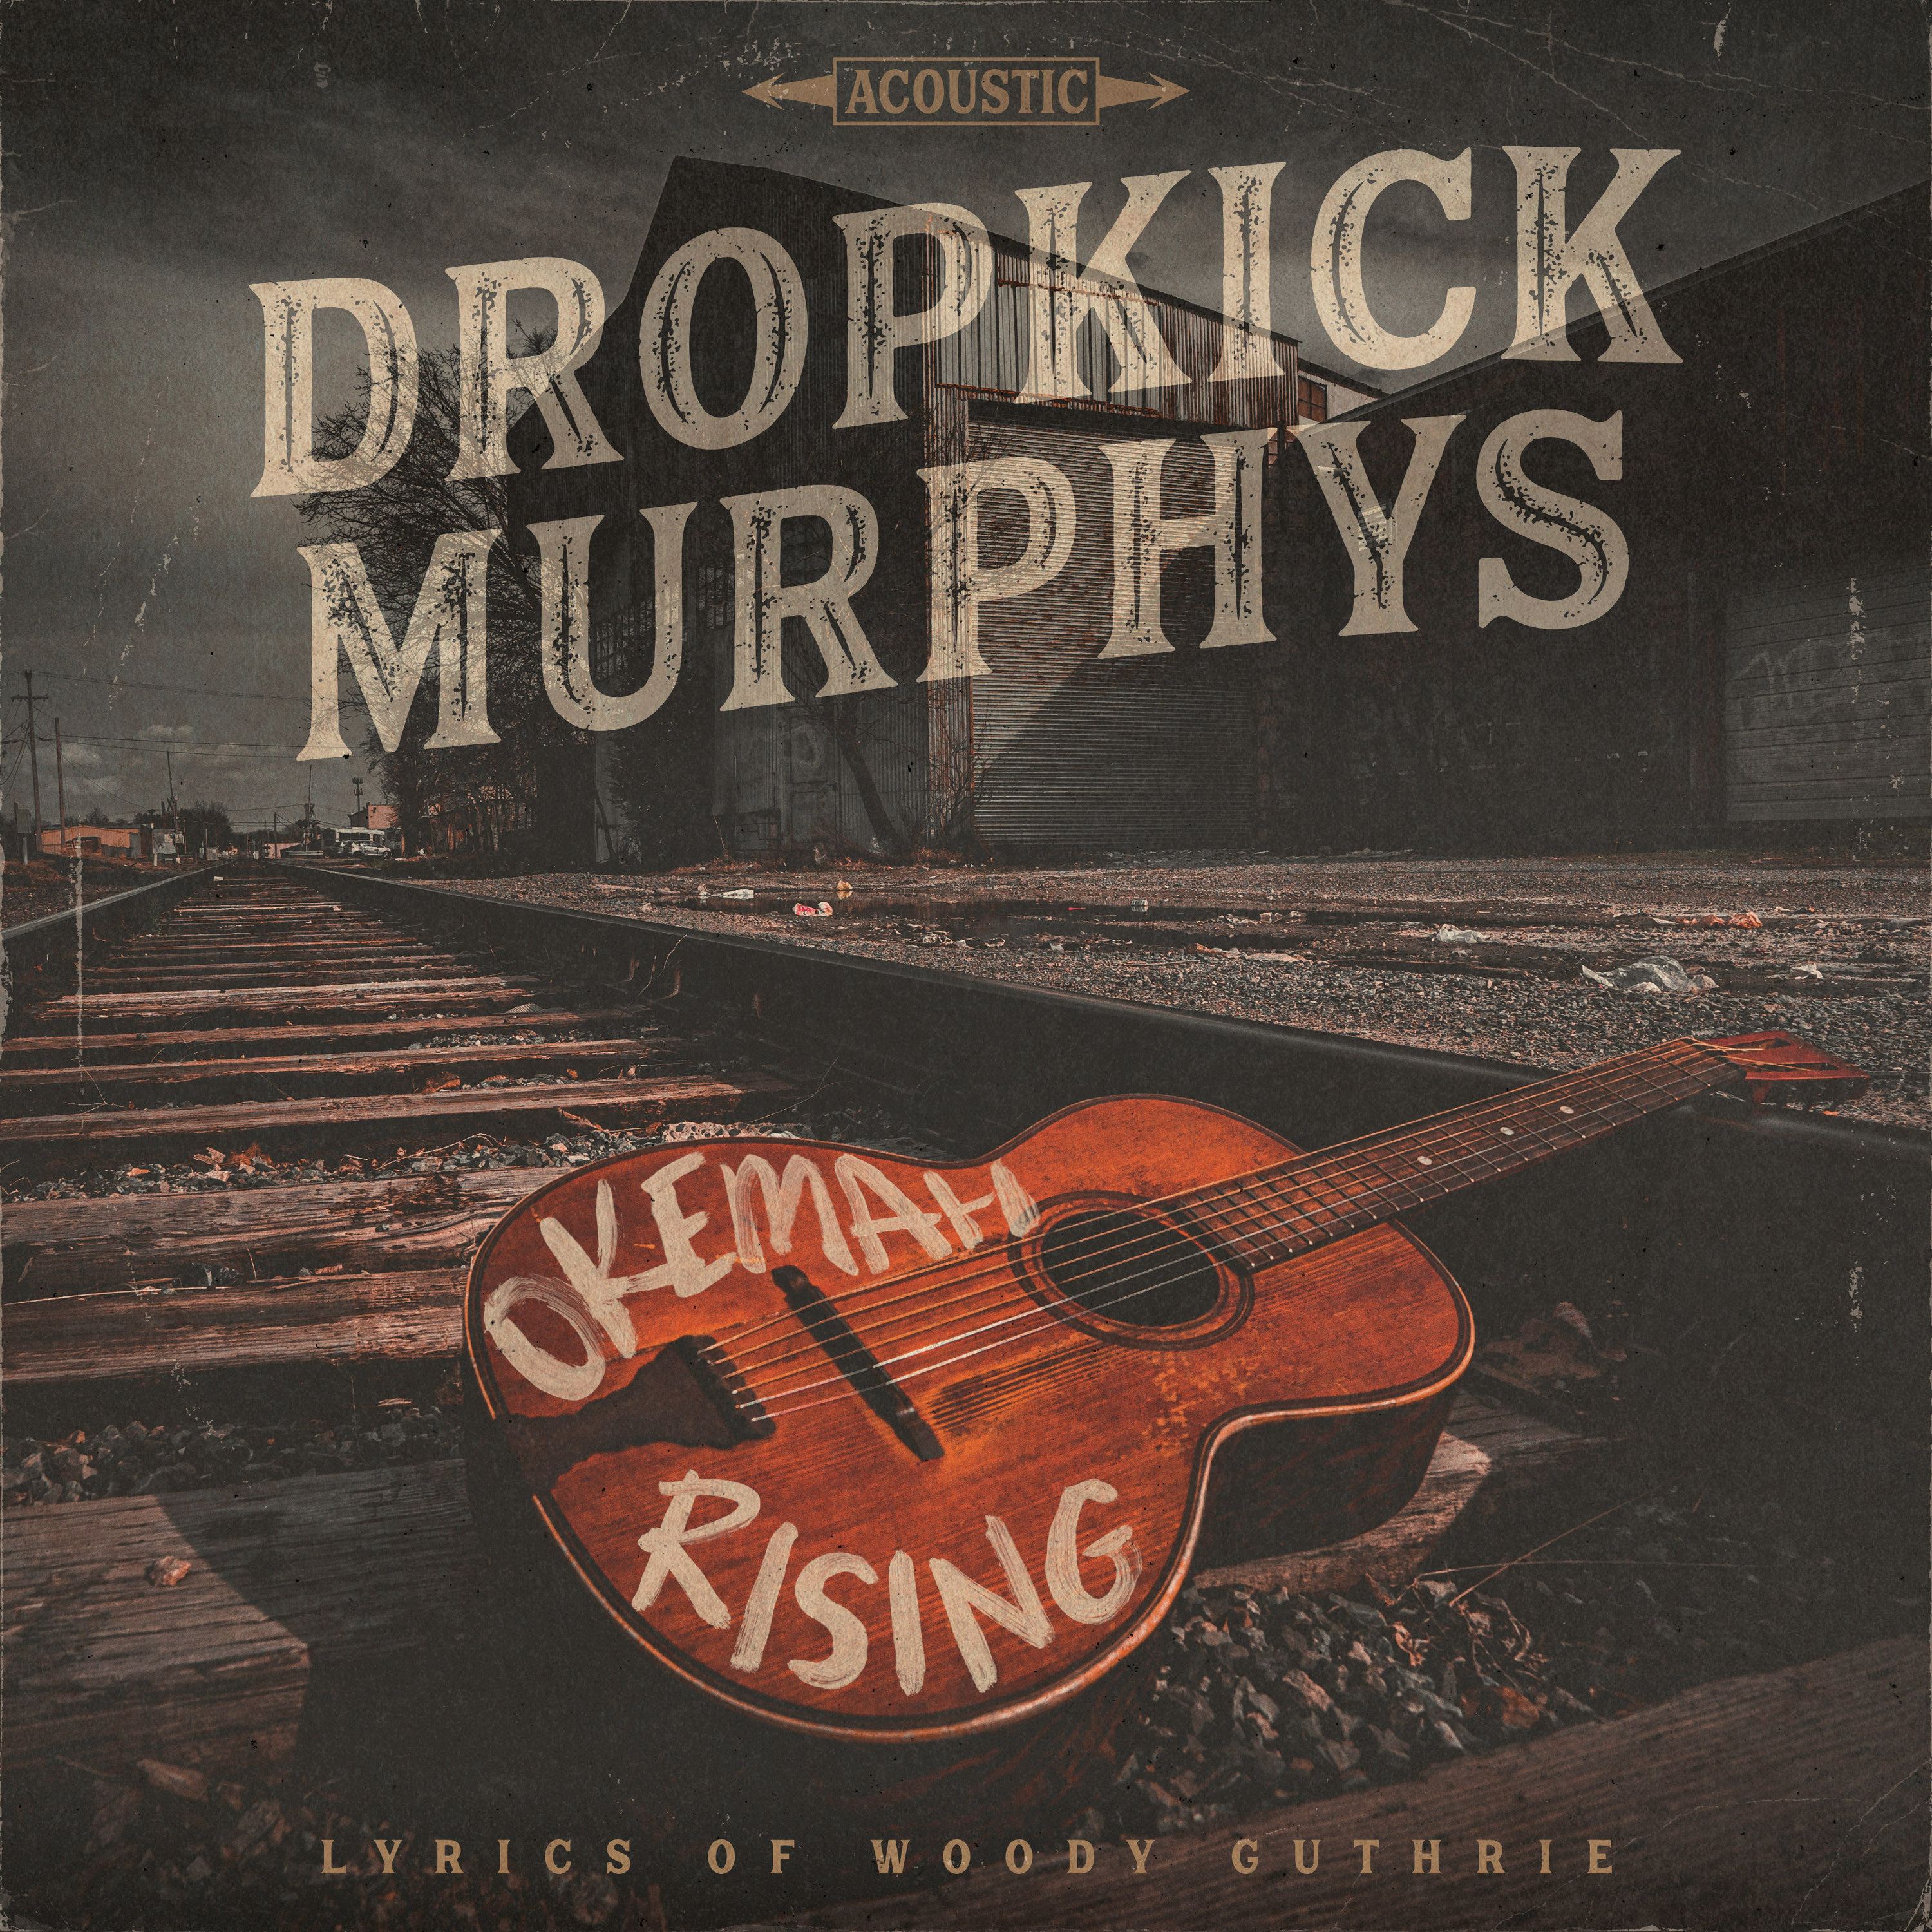 Dropkick Murphys - 2023 - Okemah Rising (24-44.1)